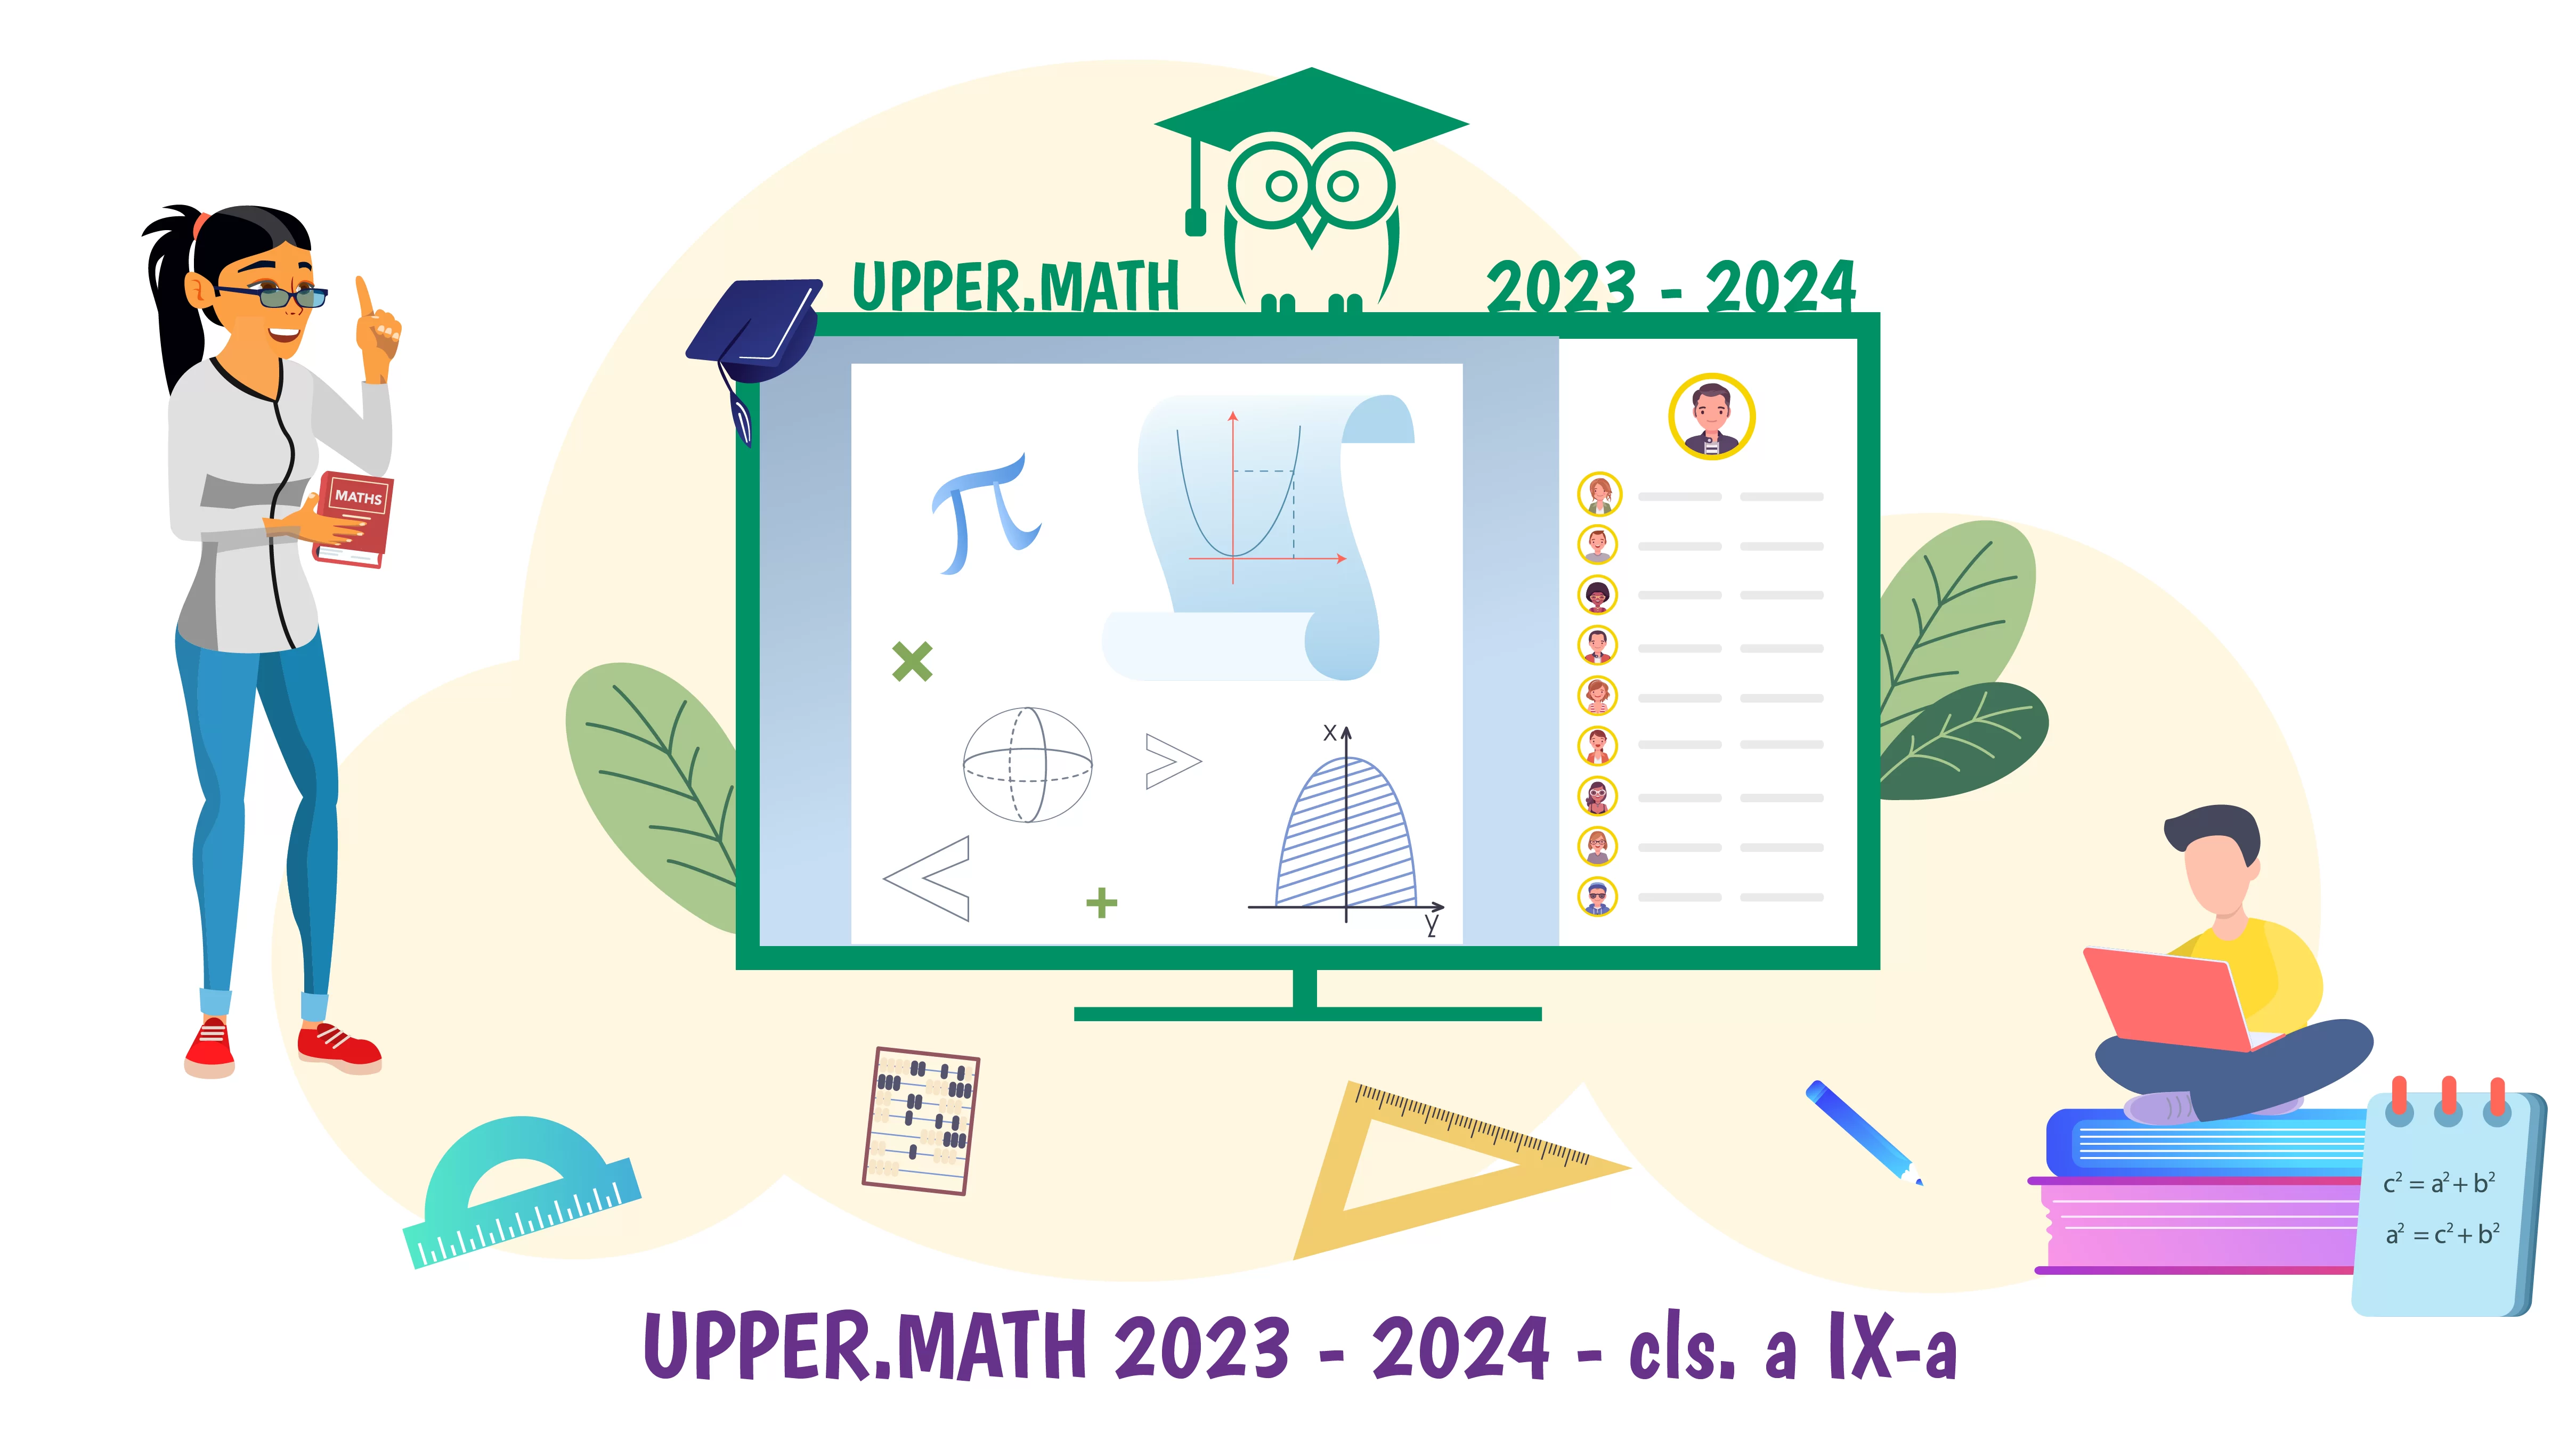 Upper.Math 2023-2024 clasa a IX-a - Program de pregatire matematica